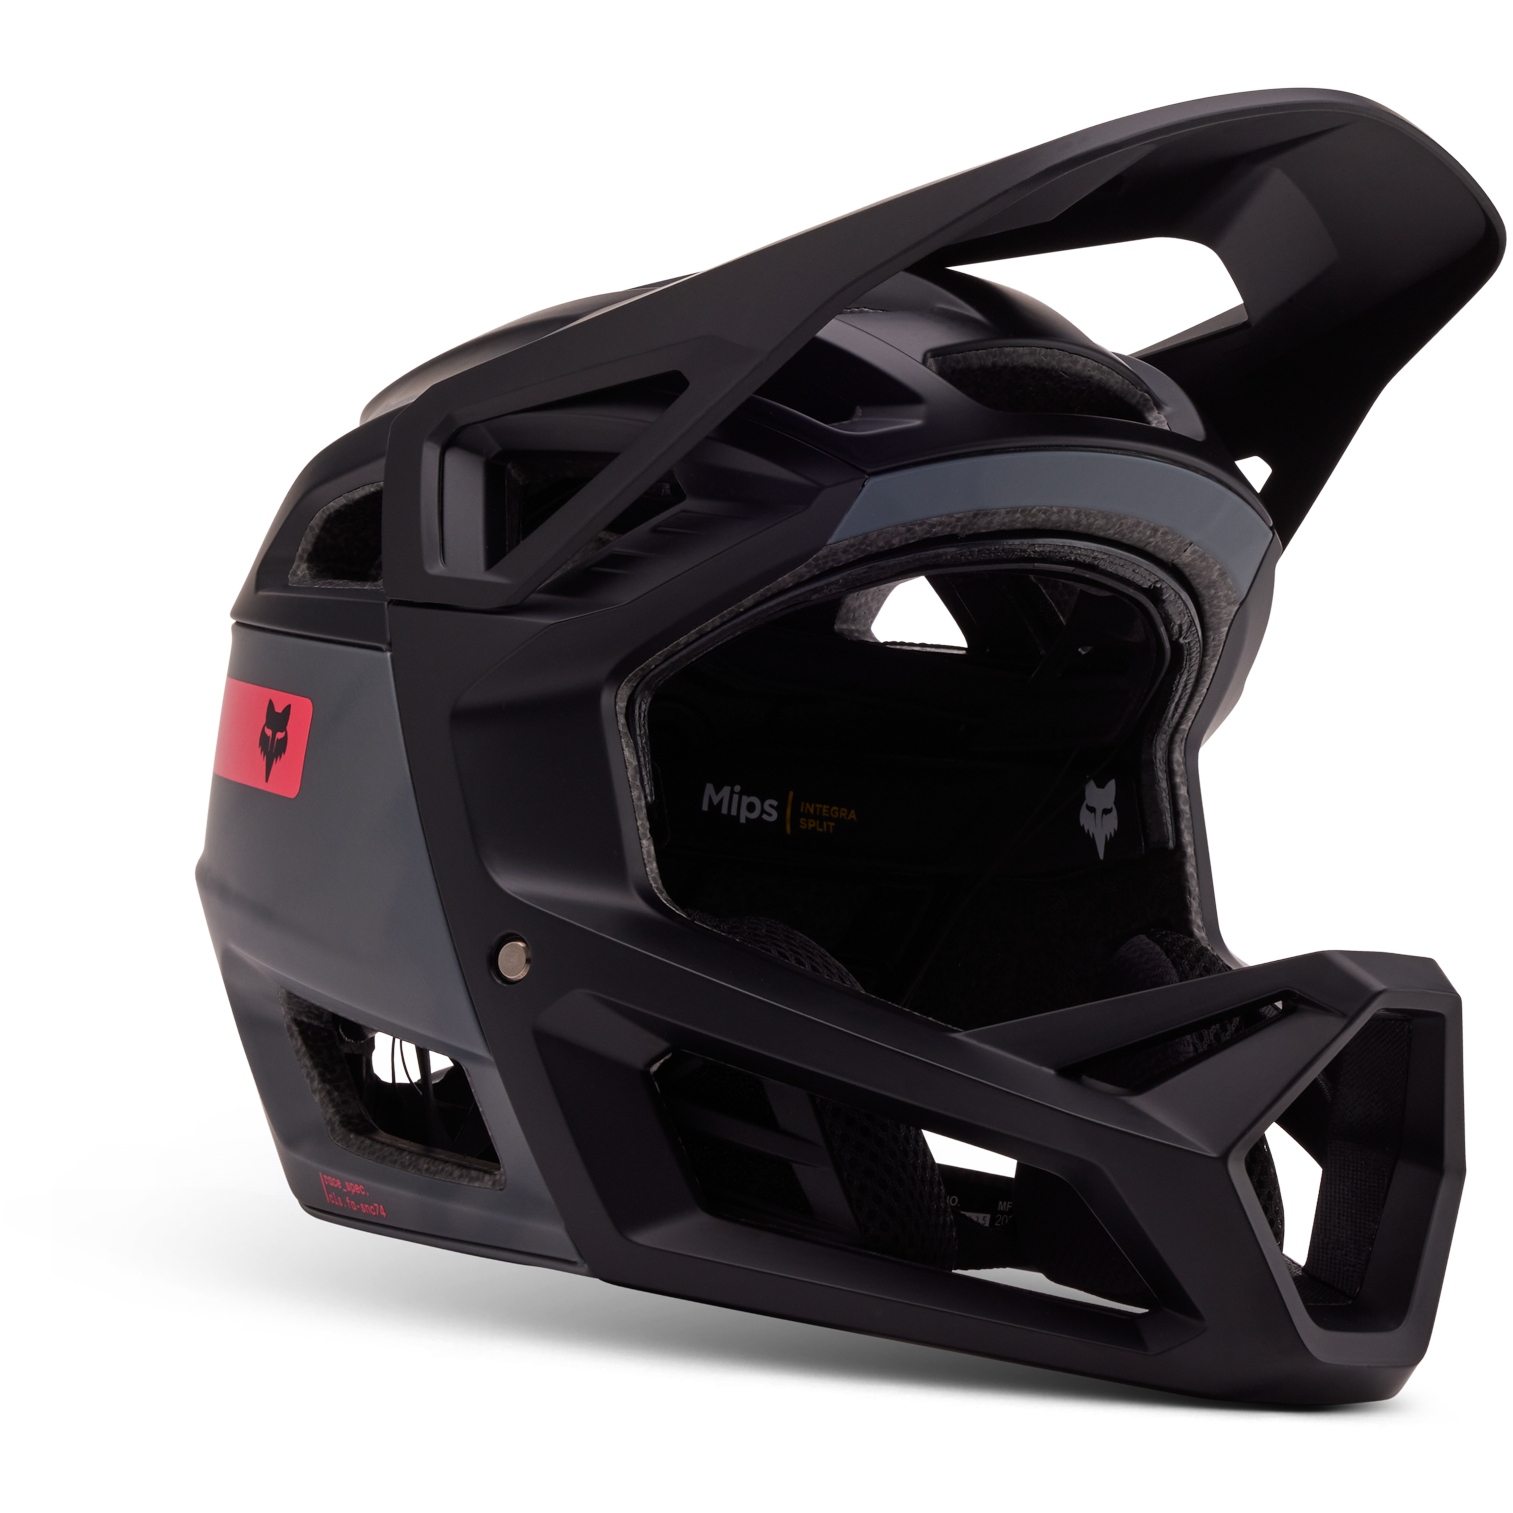 Produktbild von FOX Proframe RS Full Face Helm - Taunt - schwarz